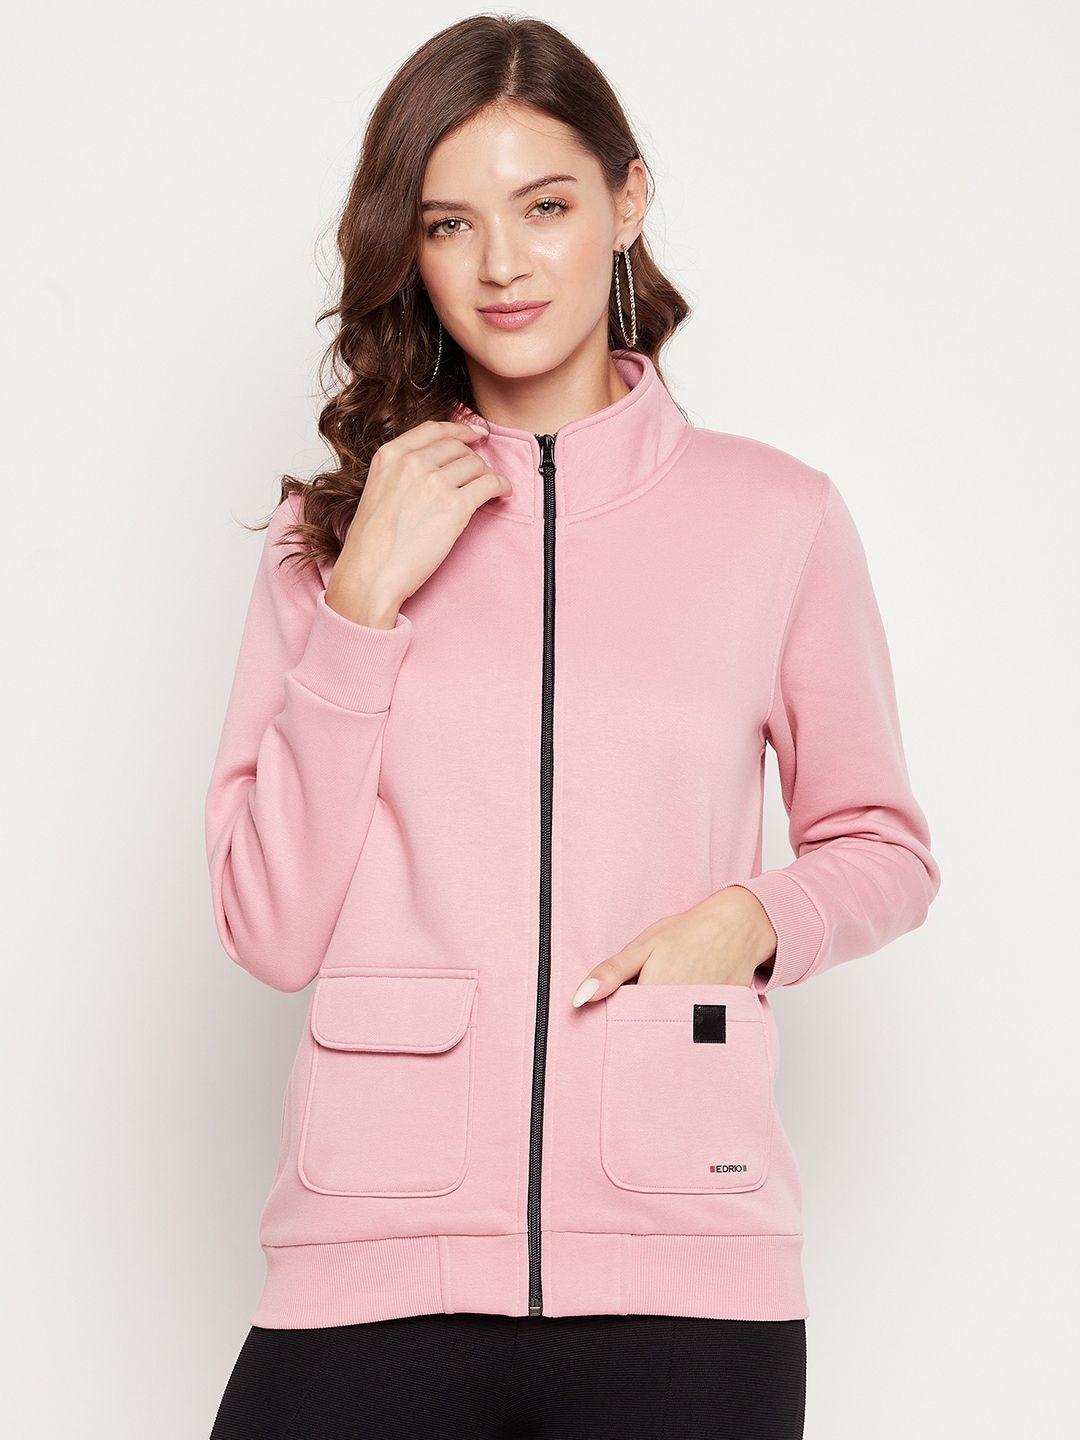 edrio women pink fleece sweatshirt